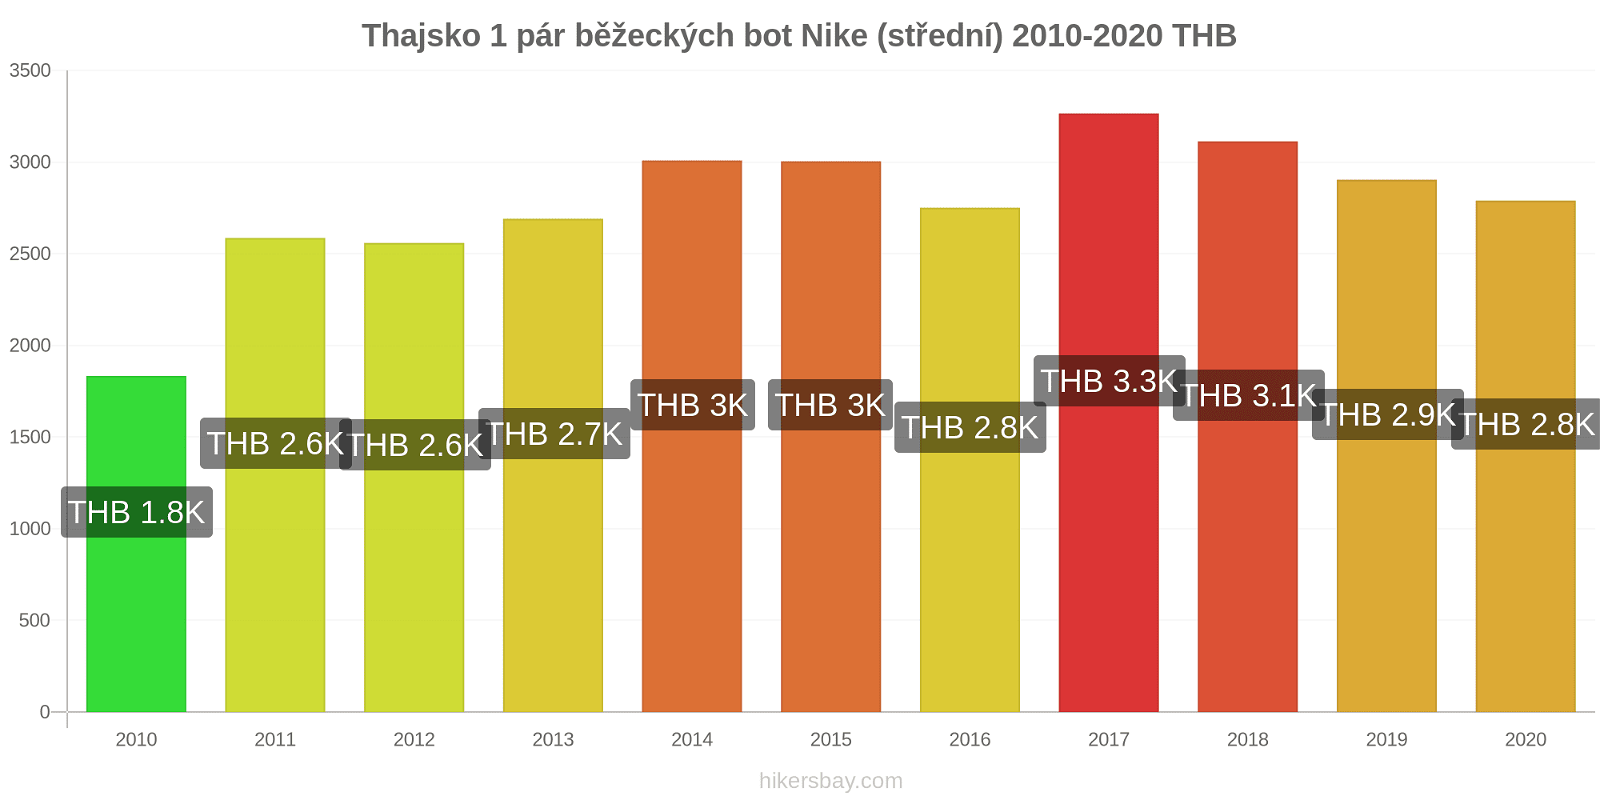 Thajsko změny cen 1 pár běžeckých bot Nike (střední) hikersbay.com